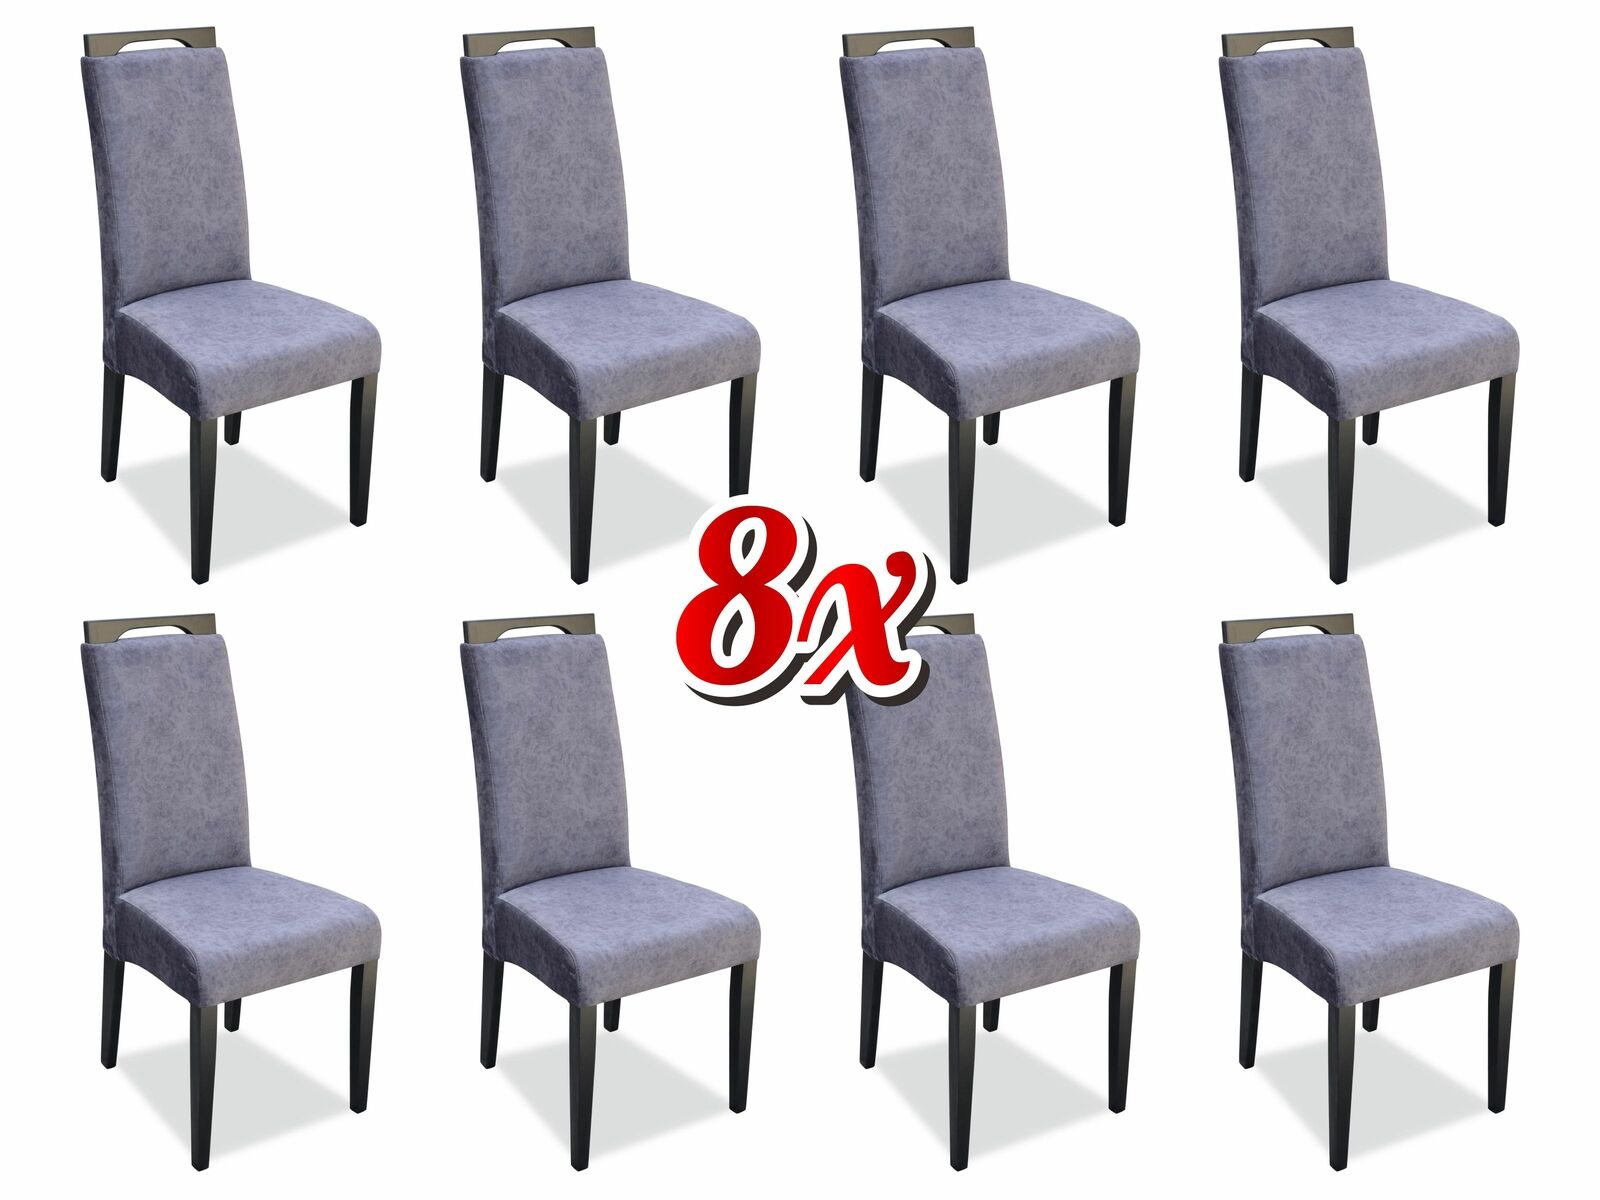 Esszimmer 8x Stühle Stuhl Set Sessel Küche Neu Design Polster Leder Textil Möbel